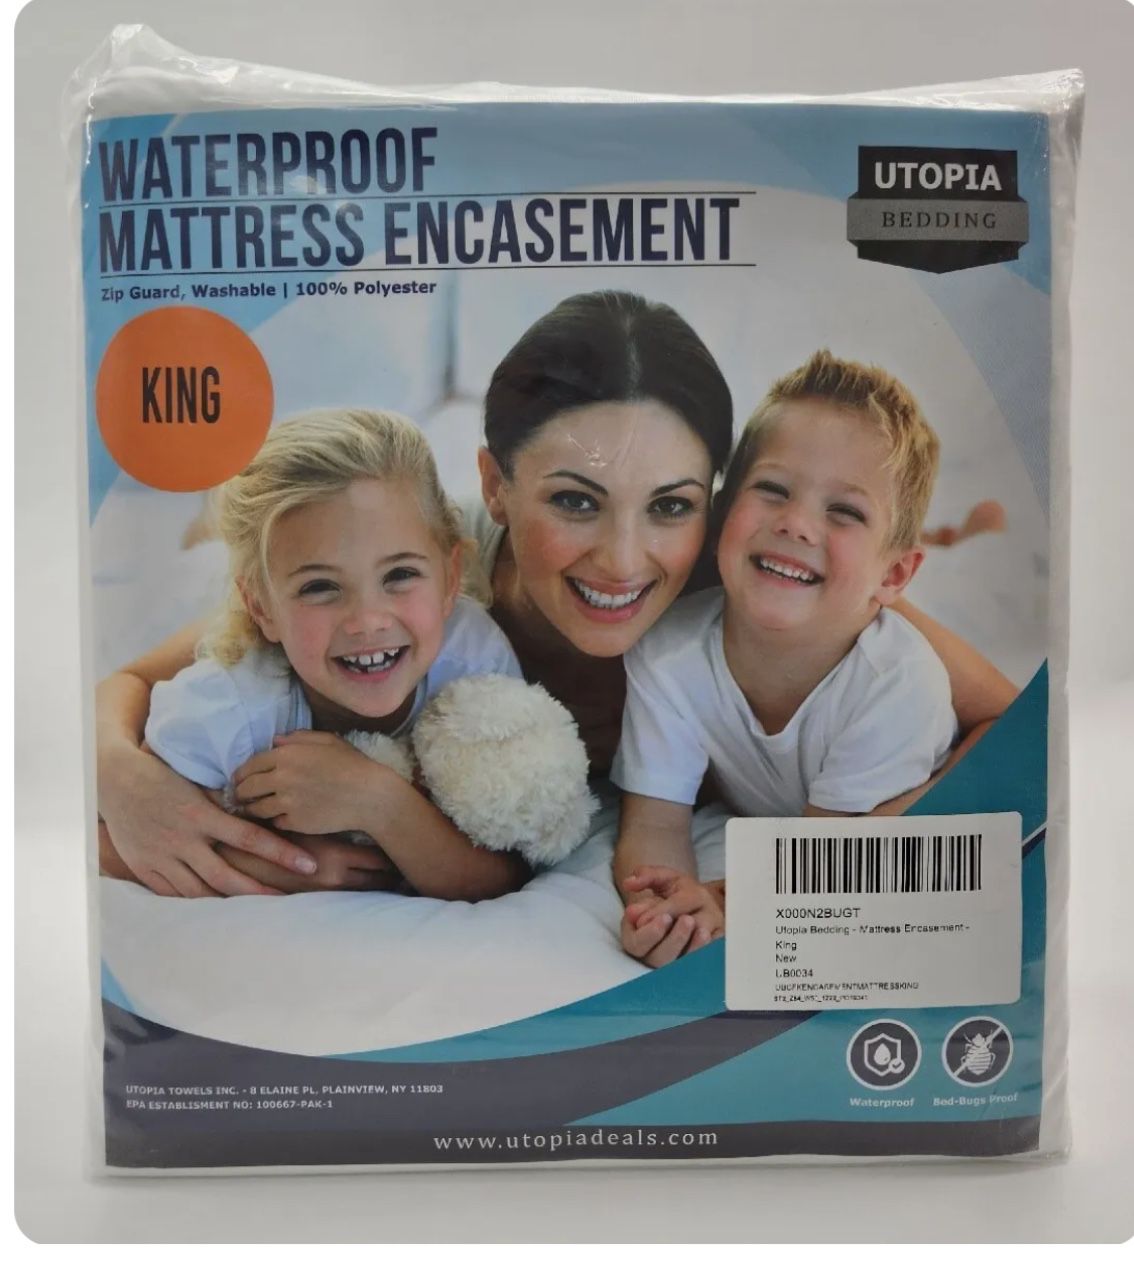 Utopia Bedding Zip Guard, Washable Waterproof Mattress Encasement